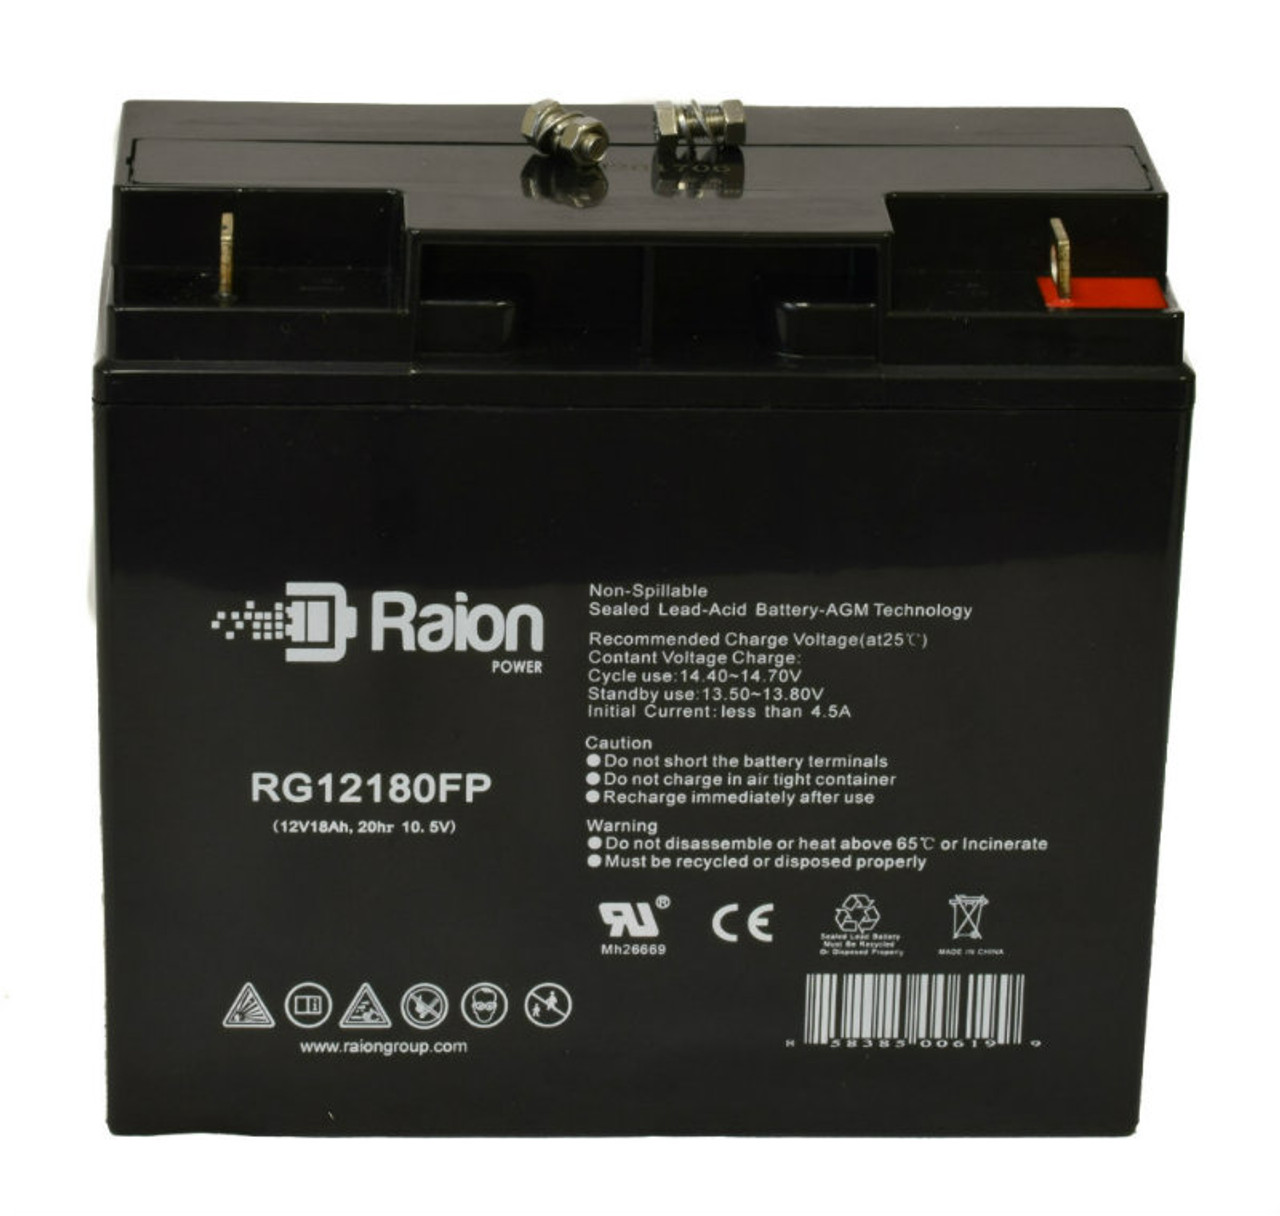 Raion Power RG12180FP 12V 18Ah Lead Acid Battery for Telong TL12170